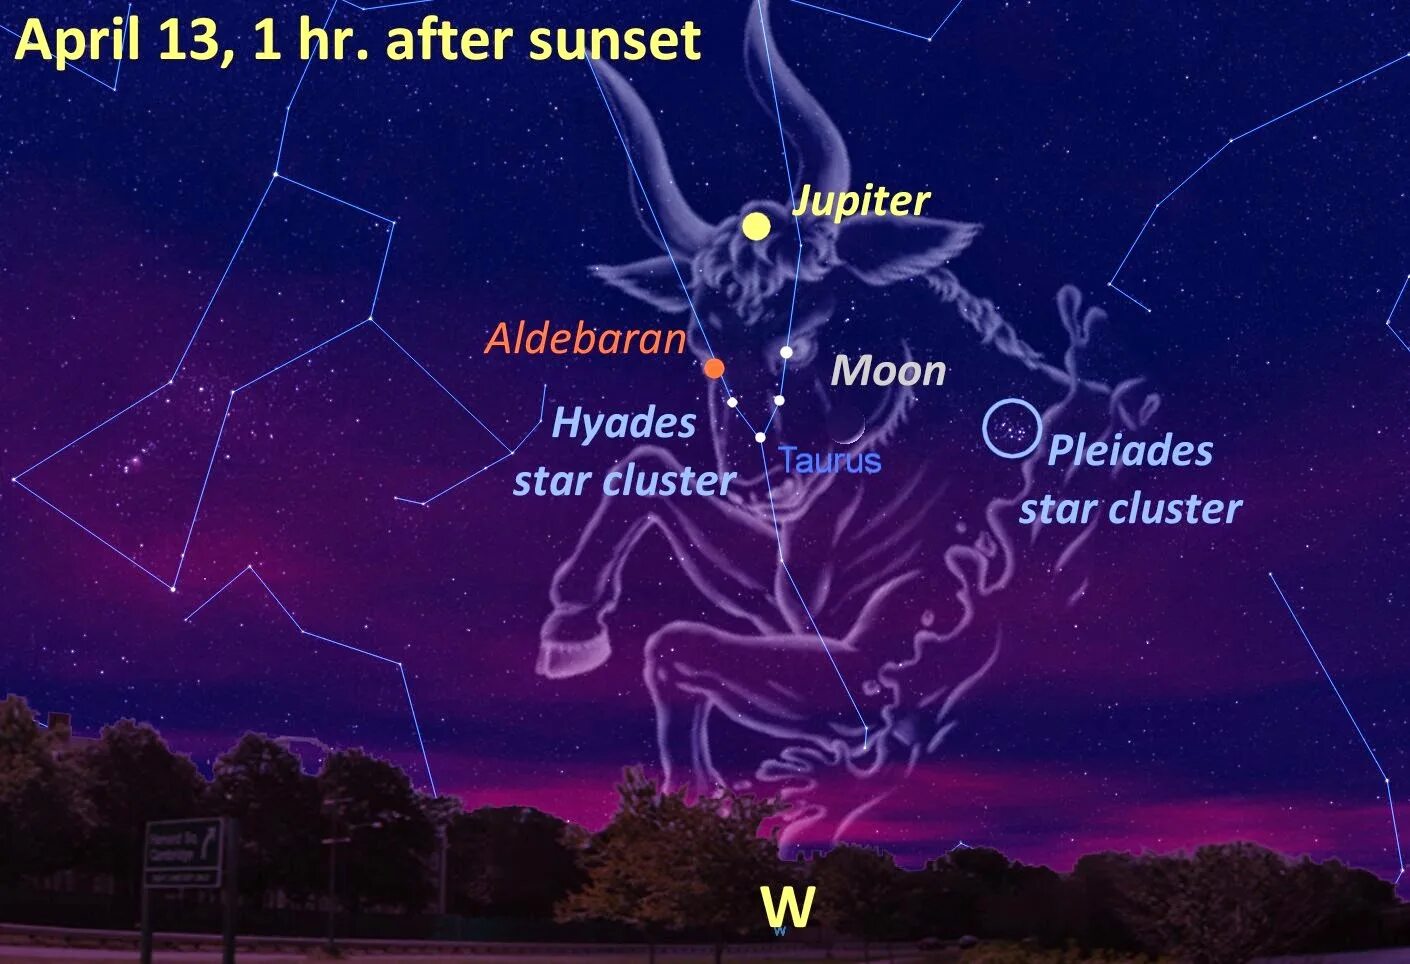 В каком созвездии находится юпитер. Звезда альхека Созвездие тельца. Созвездие Телец Альдебаран. Альдебаран звезда в созвездии тельца. Созвездие Альдебаран схема.